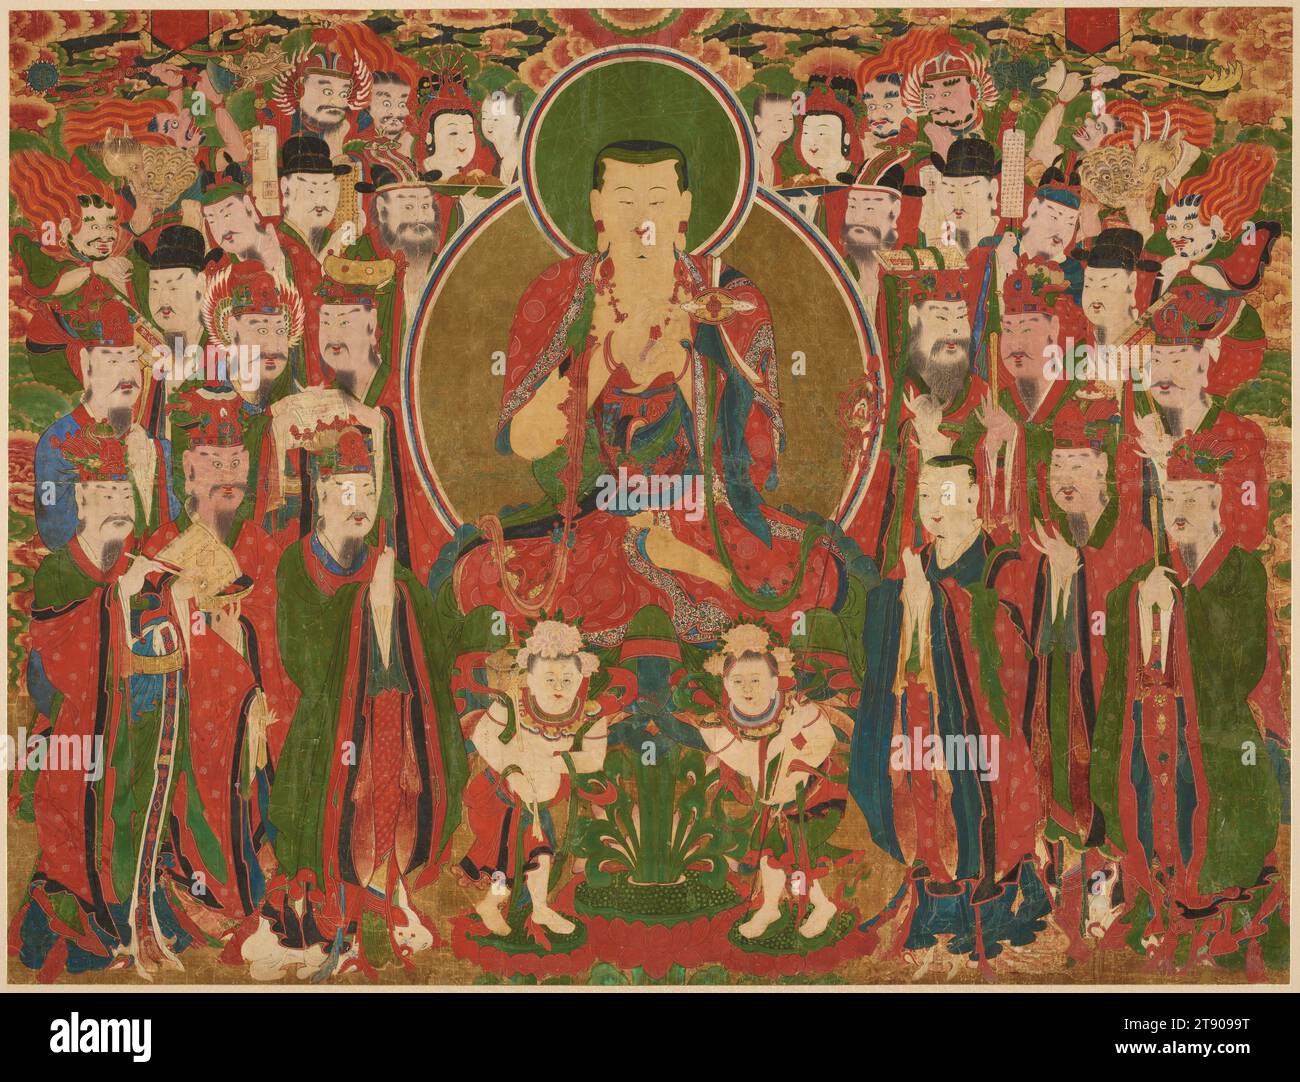 Ksitigarbha und die zehn Könige der Hölle, 18. Jahrhundert, Unbekannter Koreaner, 62 x 80 x 7/8 cm (157,48 x 203,2 x 2,22 cm), Tinte und Farbe auf Seide, Korea, 18. Jahrhundert, in Korea betonten buddhistische Klöster den gemeinschaftlichen Charakter der Anbetung, wobei Mönche und Laien Sutren singen und zeremonielle Opfergaben vor religiöse Bilder stellten. In der Folge wurden großformatige, farbenfrohe Gemälde während der Choson-Dynastie zu einem häufigen Merkmal in Gotteshäusern. Dieses Gemälde stellt Ksitigarbha dar, einen Bodhisattva, von dem angenommen wird, dass er im Namen von Menschen, die zu den Qualen der Hölle verurteilt sind, Fürsprache leistet. Stockfoto